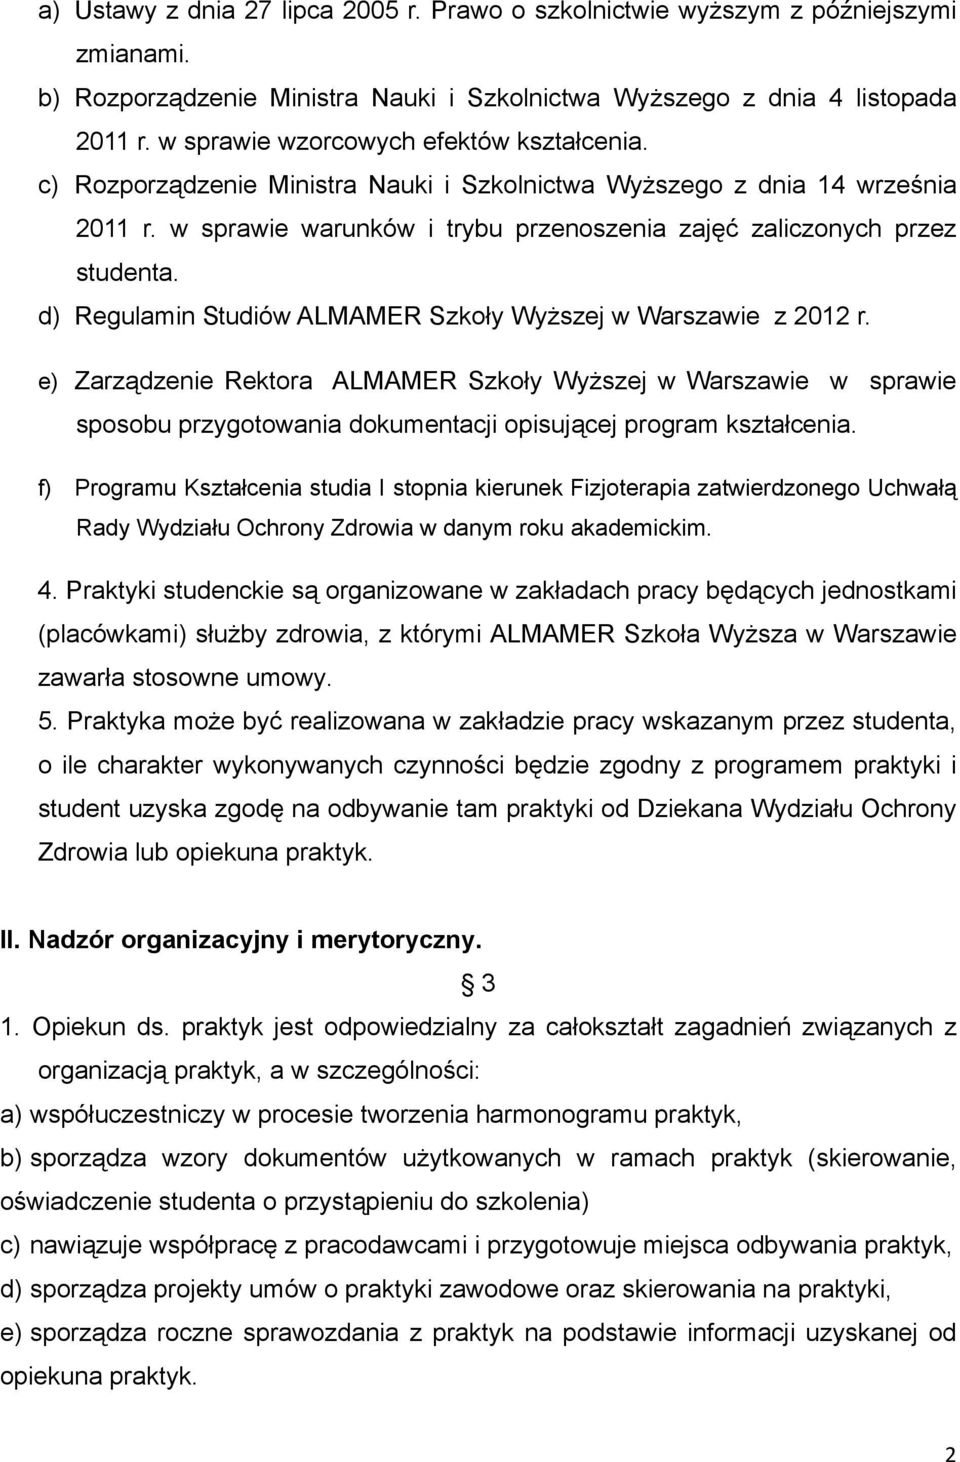 d) Regulamin Studiów ALMAMER Szkoły Wyższej w Warszawie z 2012 r. e) Zarządzenie Rektora ALMAMER Szkoły Wyższej w Warszawie w sprawie sposobu przygotowania dokumentacji opisującej program kształcenia.